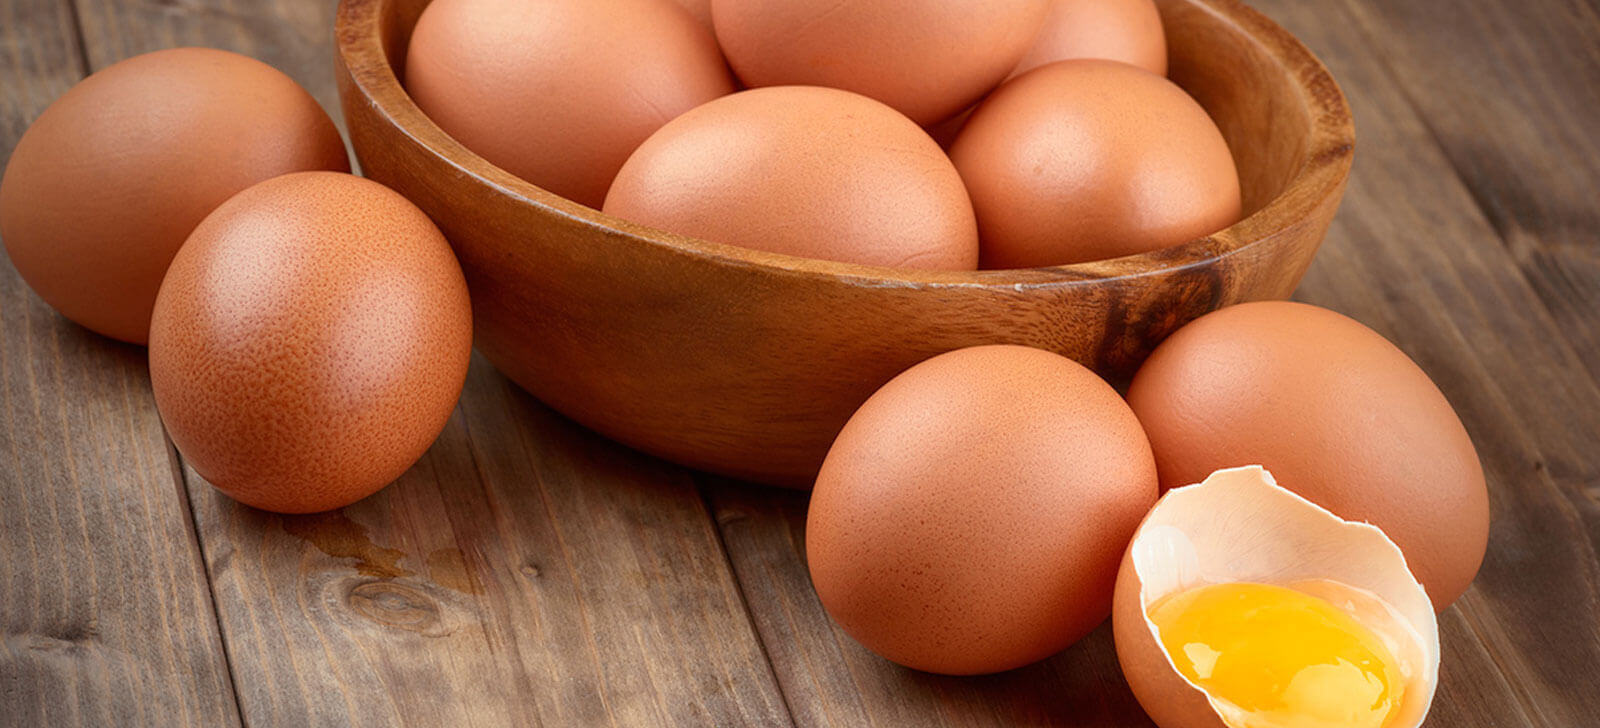 farmacia manipulacao campinas nova natural blog natureza magistral emagrecimento ovos 